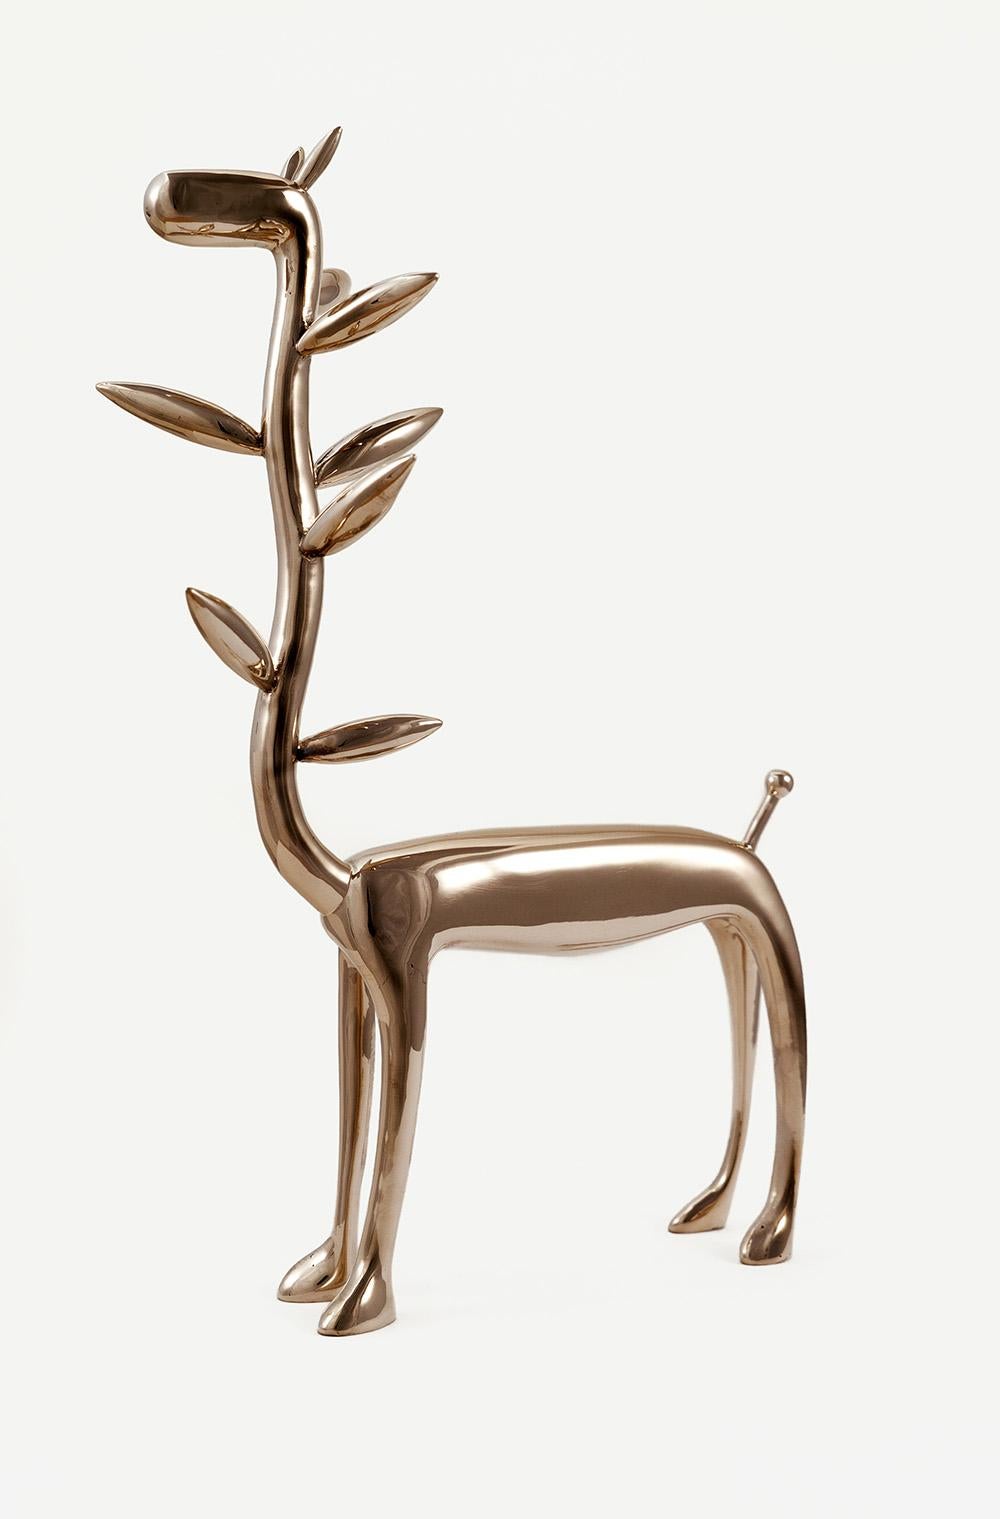 Pflanzgefäßiraffe von Marcelo M. Burgos – Skulptur aus polierter Bronze, golden, Giraffen – Sculpture von Marcelo Martin Burgos